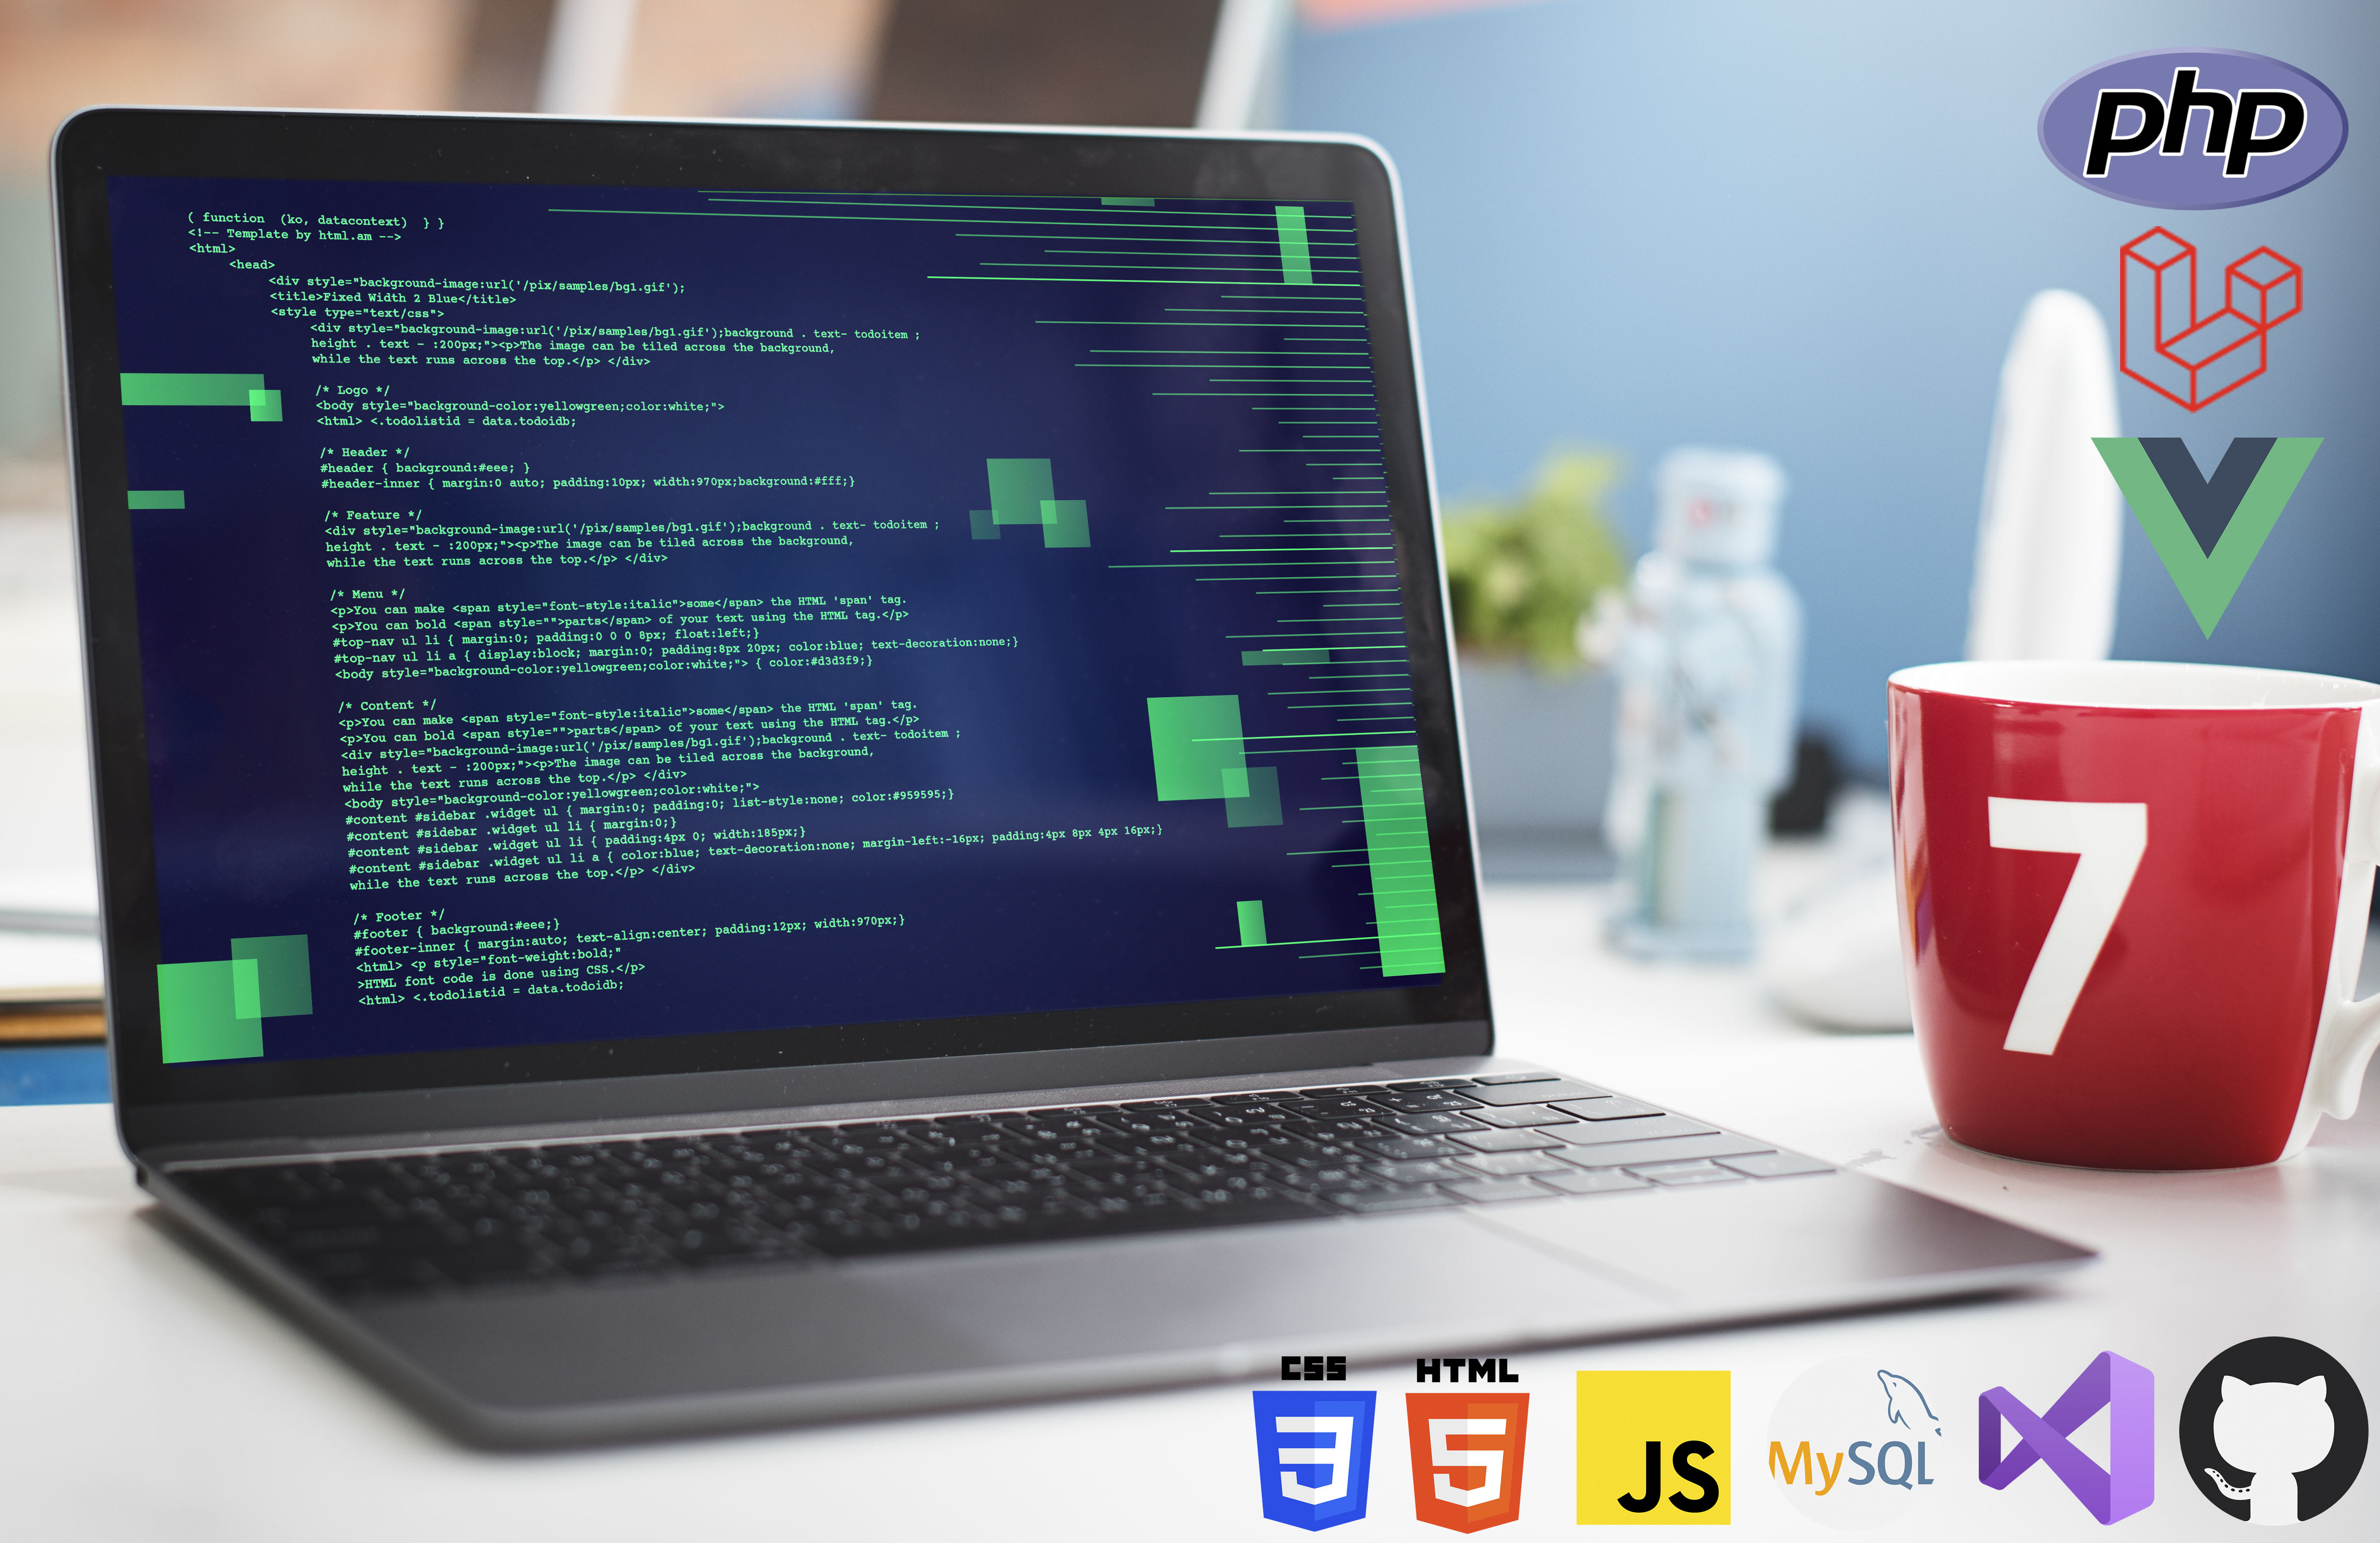 Vue JS, PHP Laravel là một trong những công nghệ tiên tiến nhất hiện nay cho phép bạn tạo ra các ứng dụng web đẹp, hiệu quả và dễ sử dụng. Sử dụng Vue JS và PHP Laravel trong phát triển những sản phẩm web của bạn sẽ giúp cho việc mã hóa trở nên dễ dàng hơn bao giờ hết.